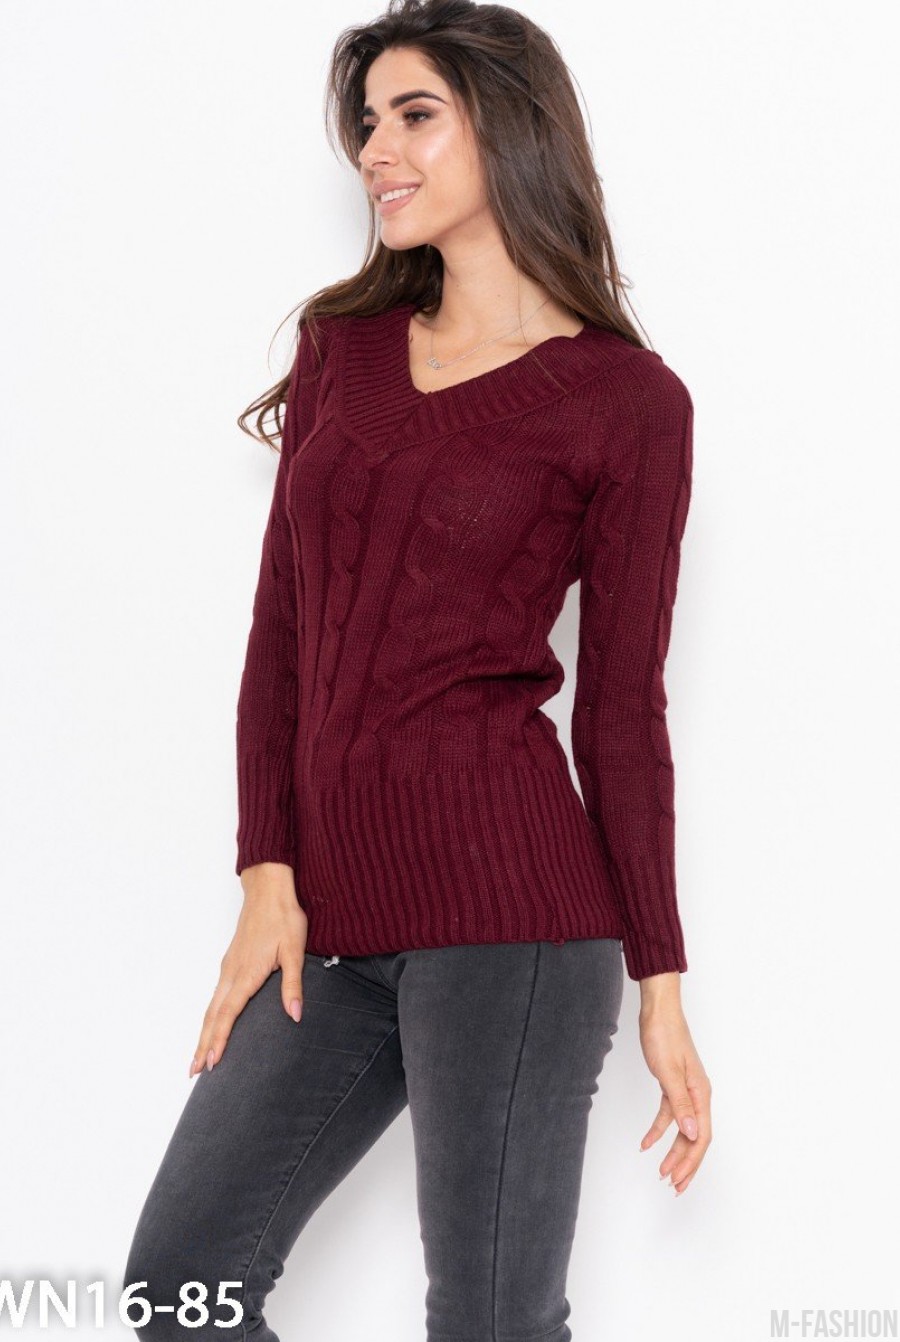 Бордовый тонкий свитер ажурной вязки- Фото 2